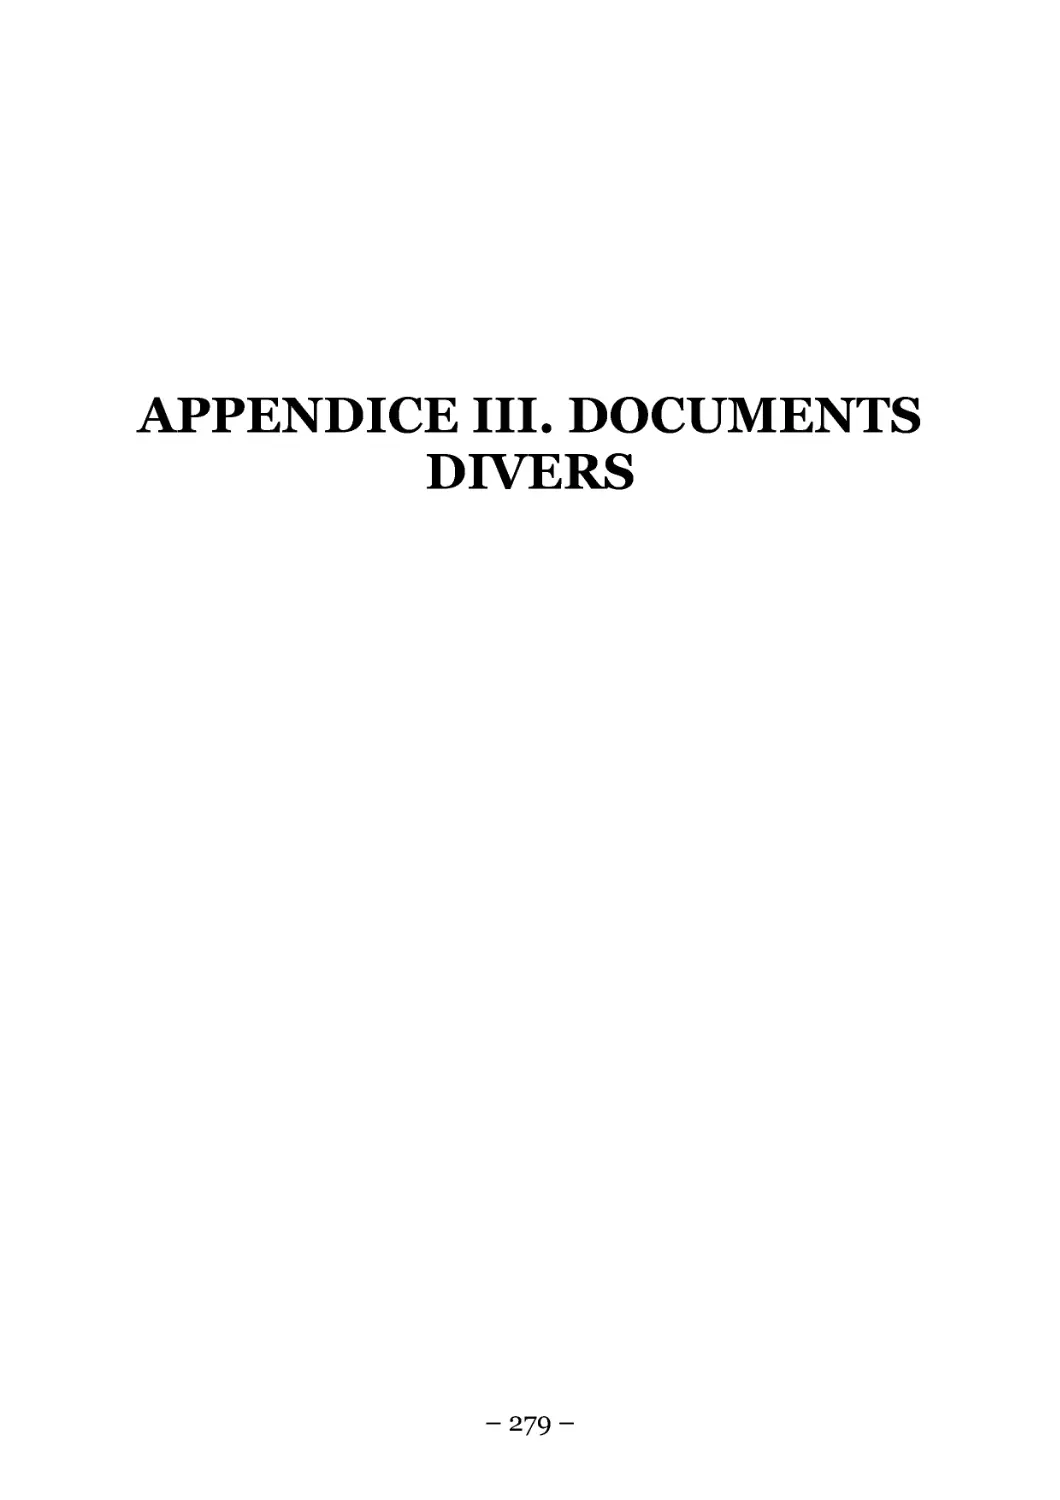 APPENDICE III. DOCUMENTS DIVERS